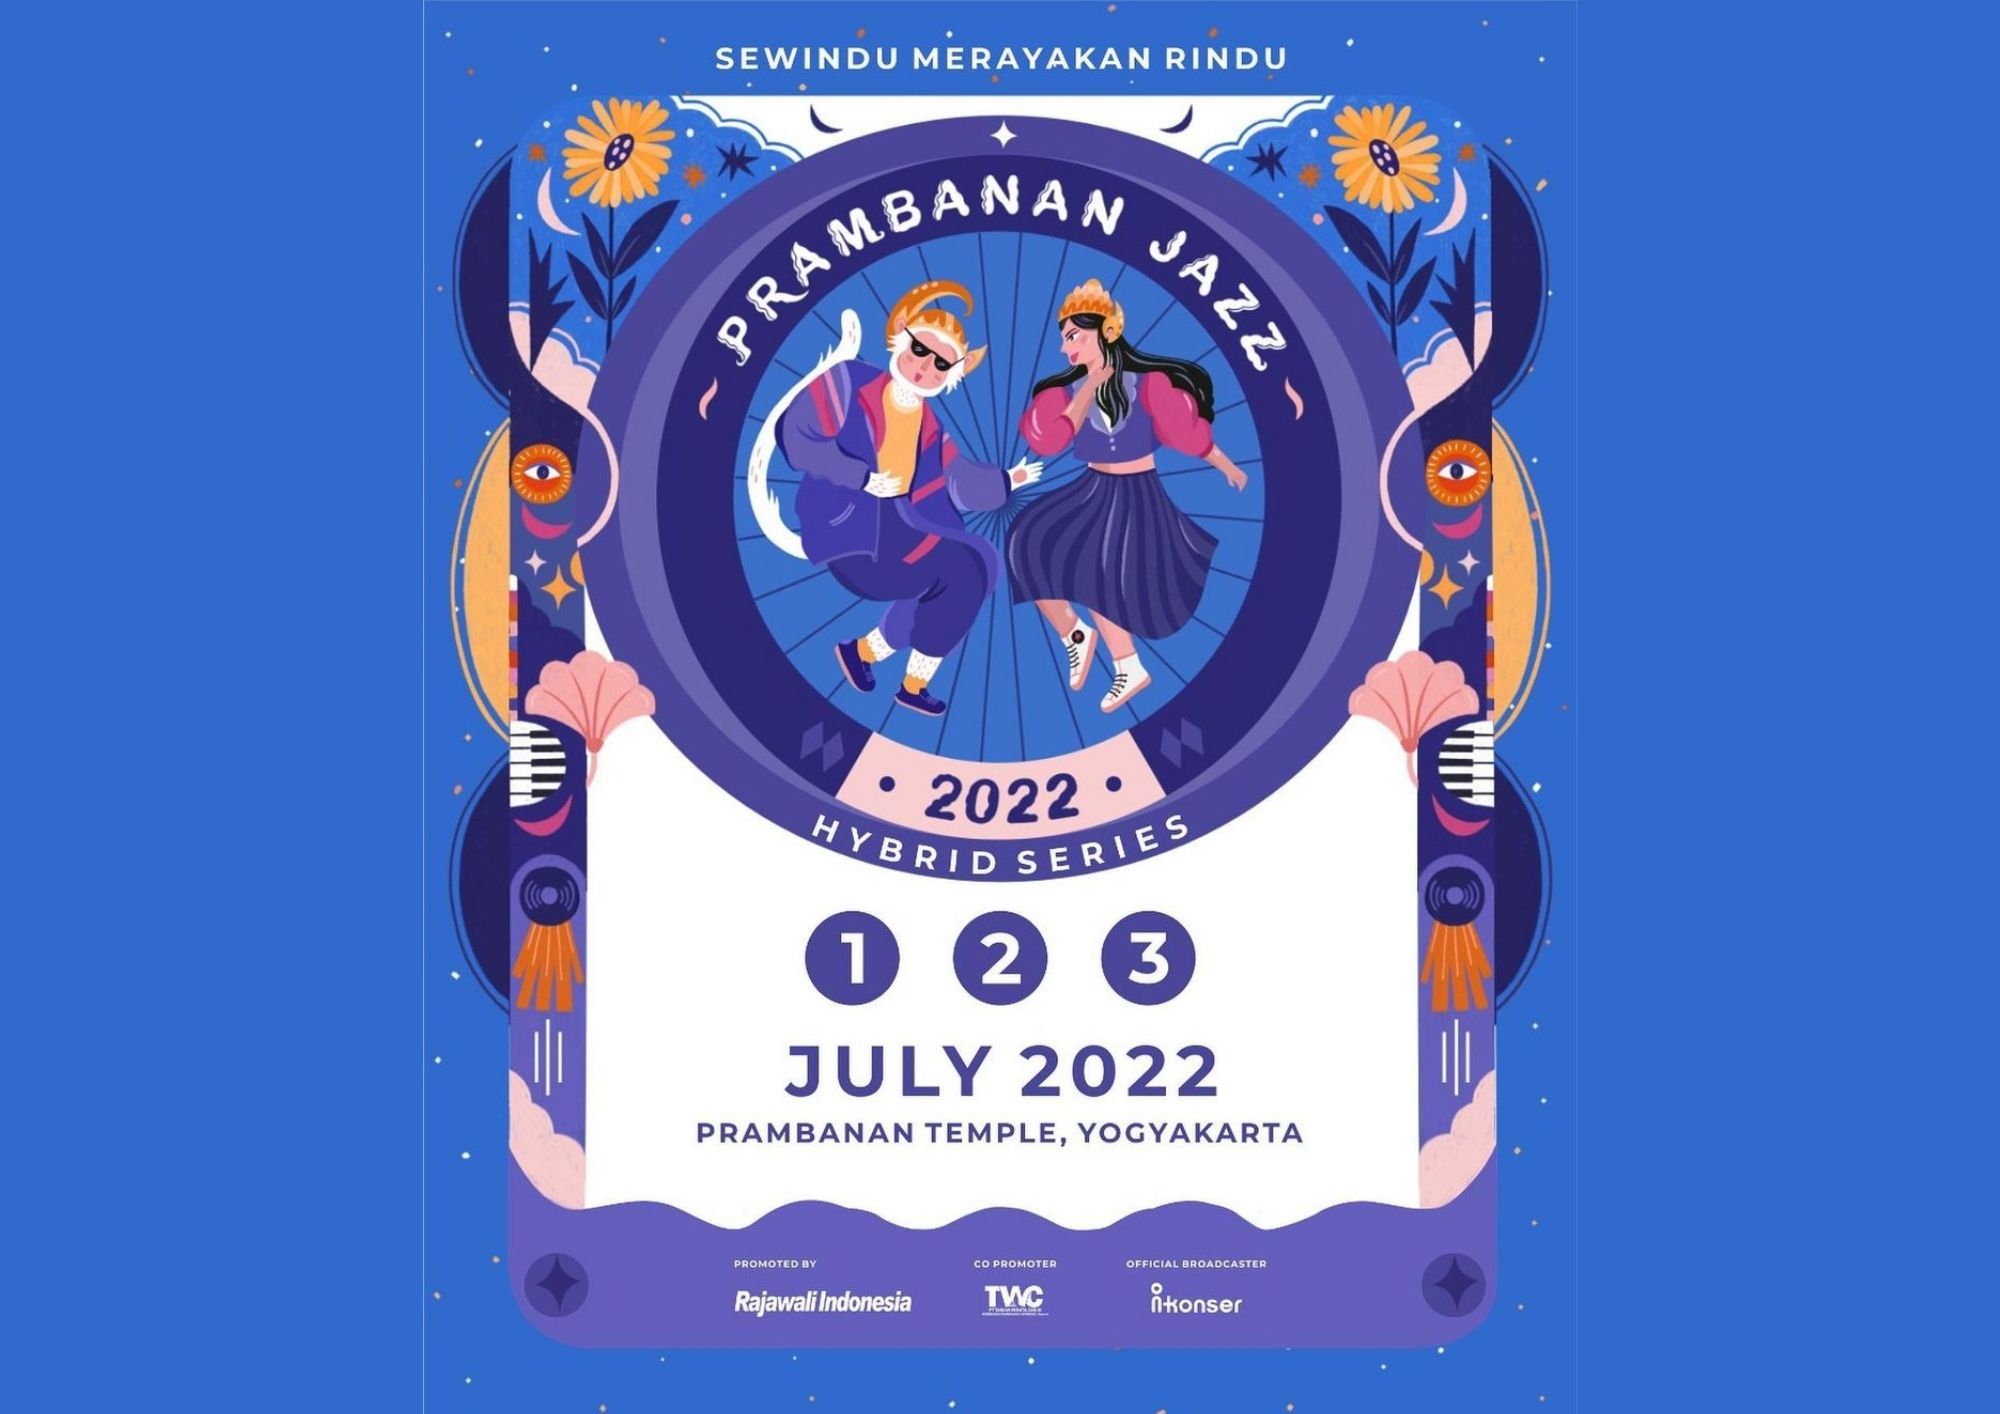 Update Rundown Prambanan Jzaa Festival 2022 : Sewindu Merayakan Rindu